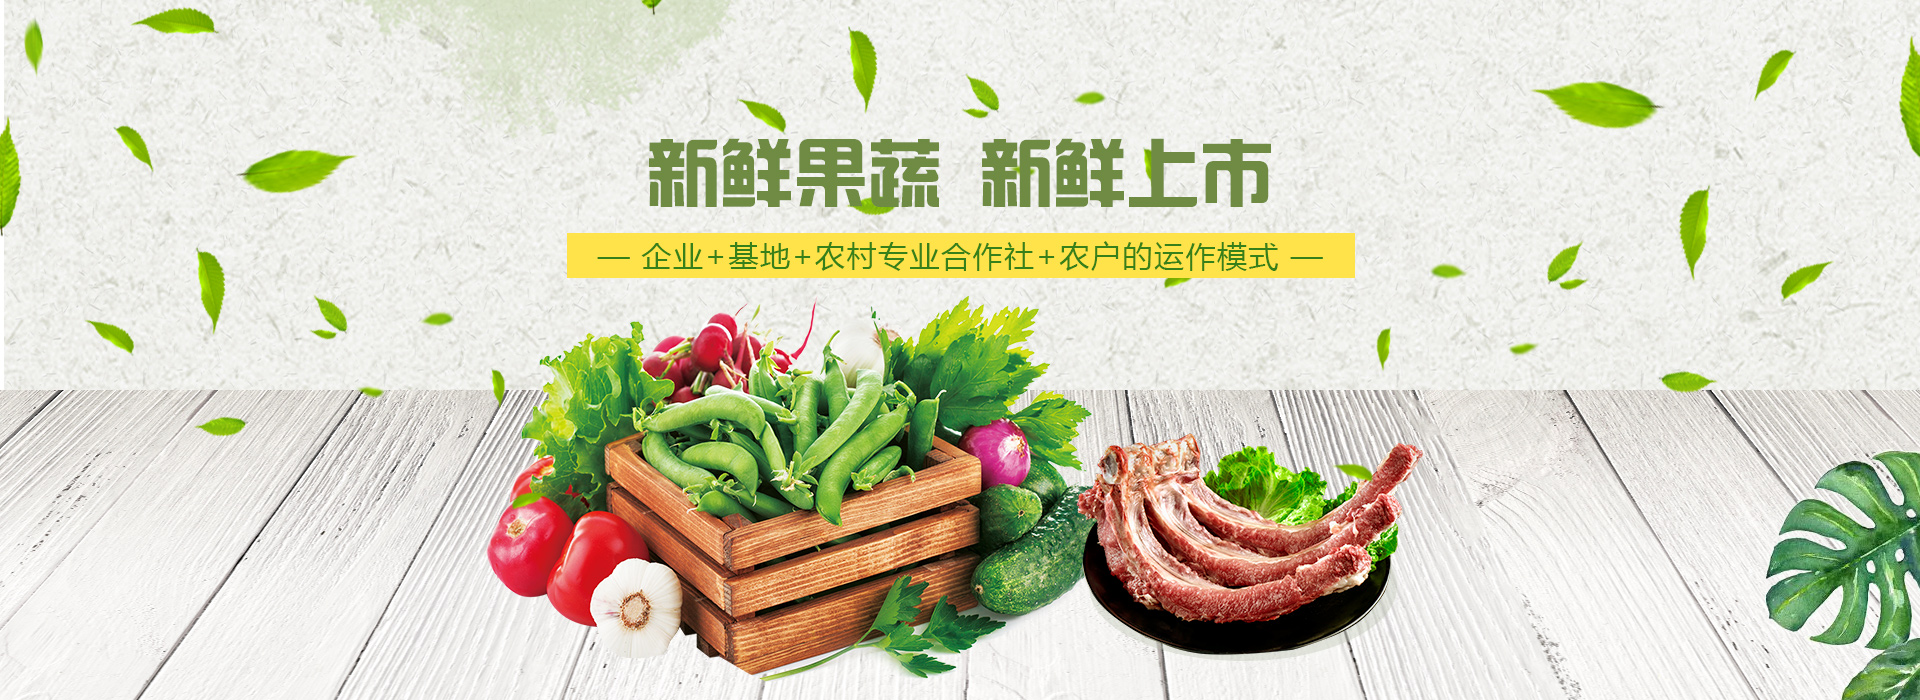 重庆聚庭农业开发有限公司